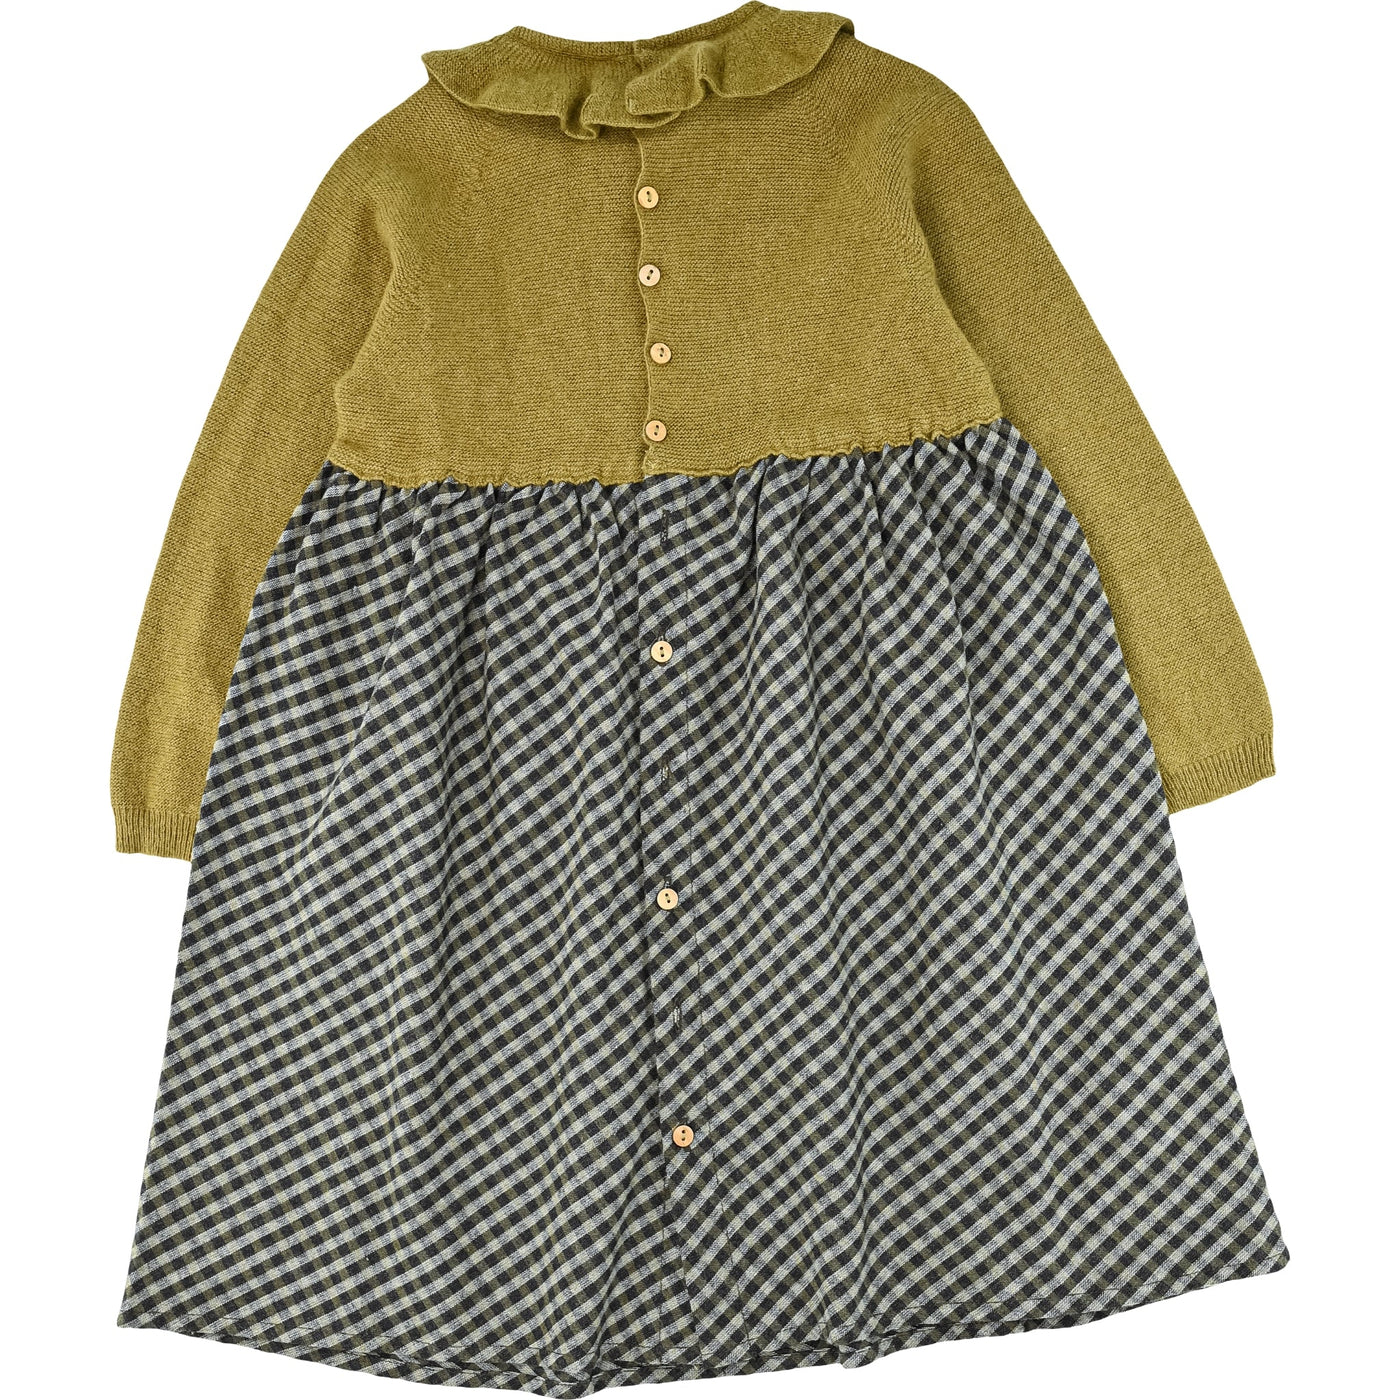 Robe à manches longues de seconde main en coton, cachemire et laine pour enfant fille de 4 ans - photo verso